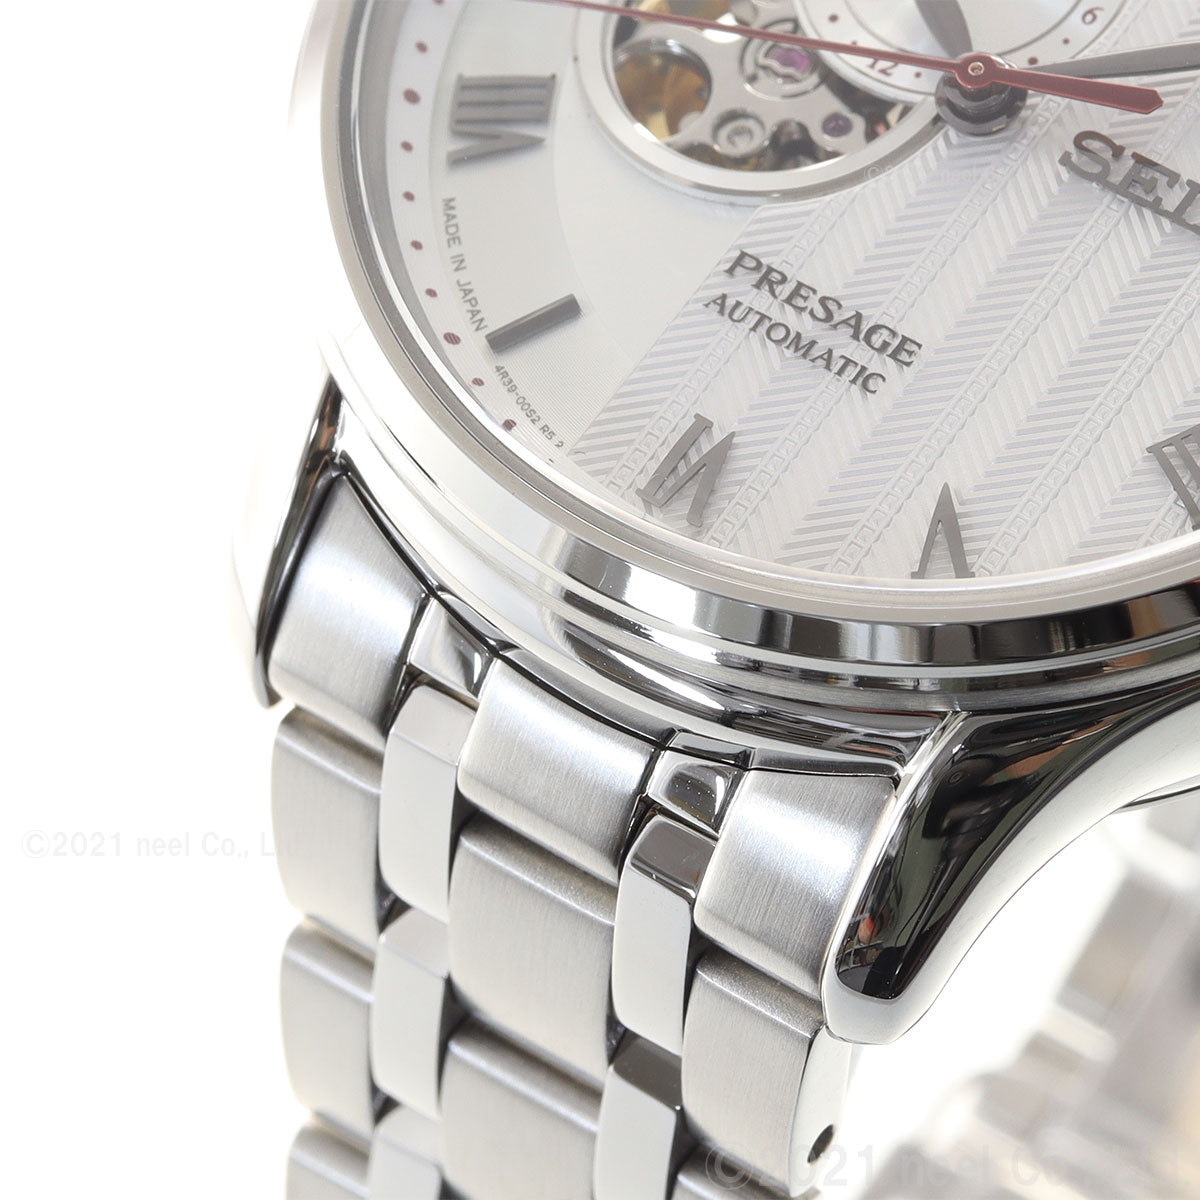 セイコー プレザージュ SEIKO PRESAGE 自動巻き メカニカル 腕時計 メンズ ベーシックライン SARY203